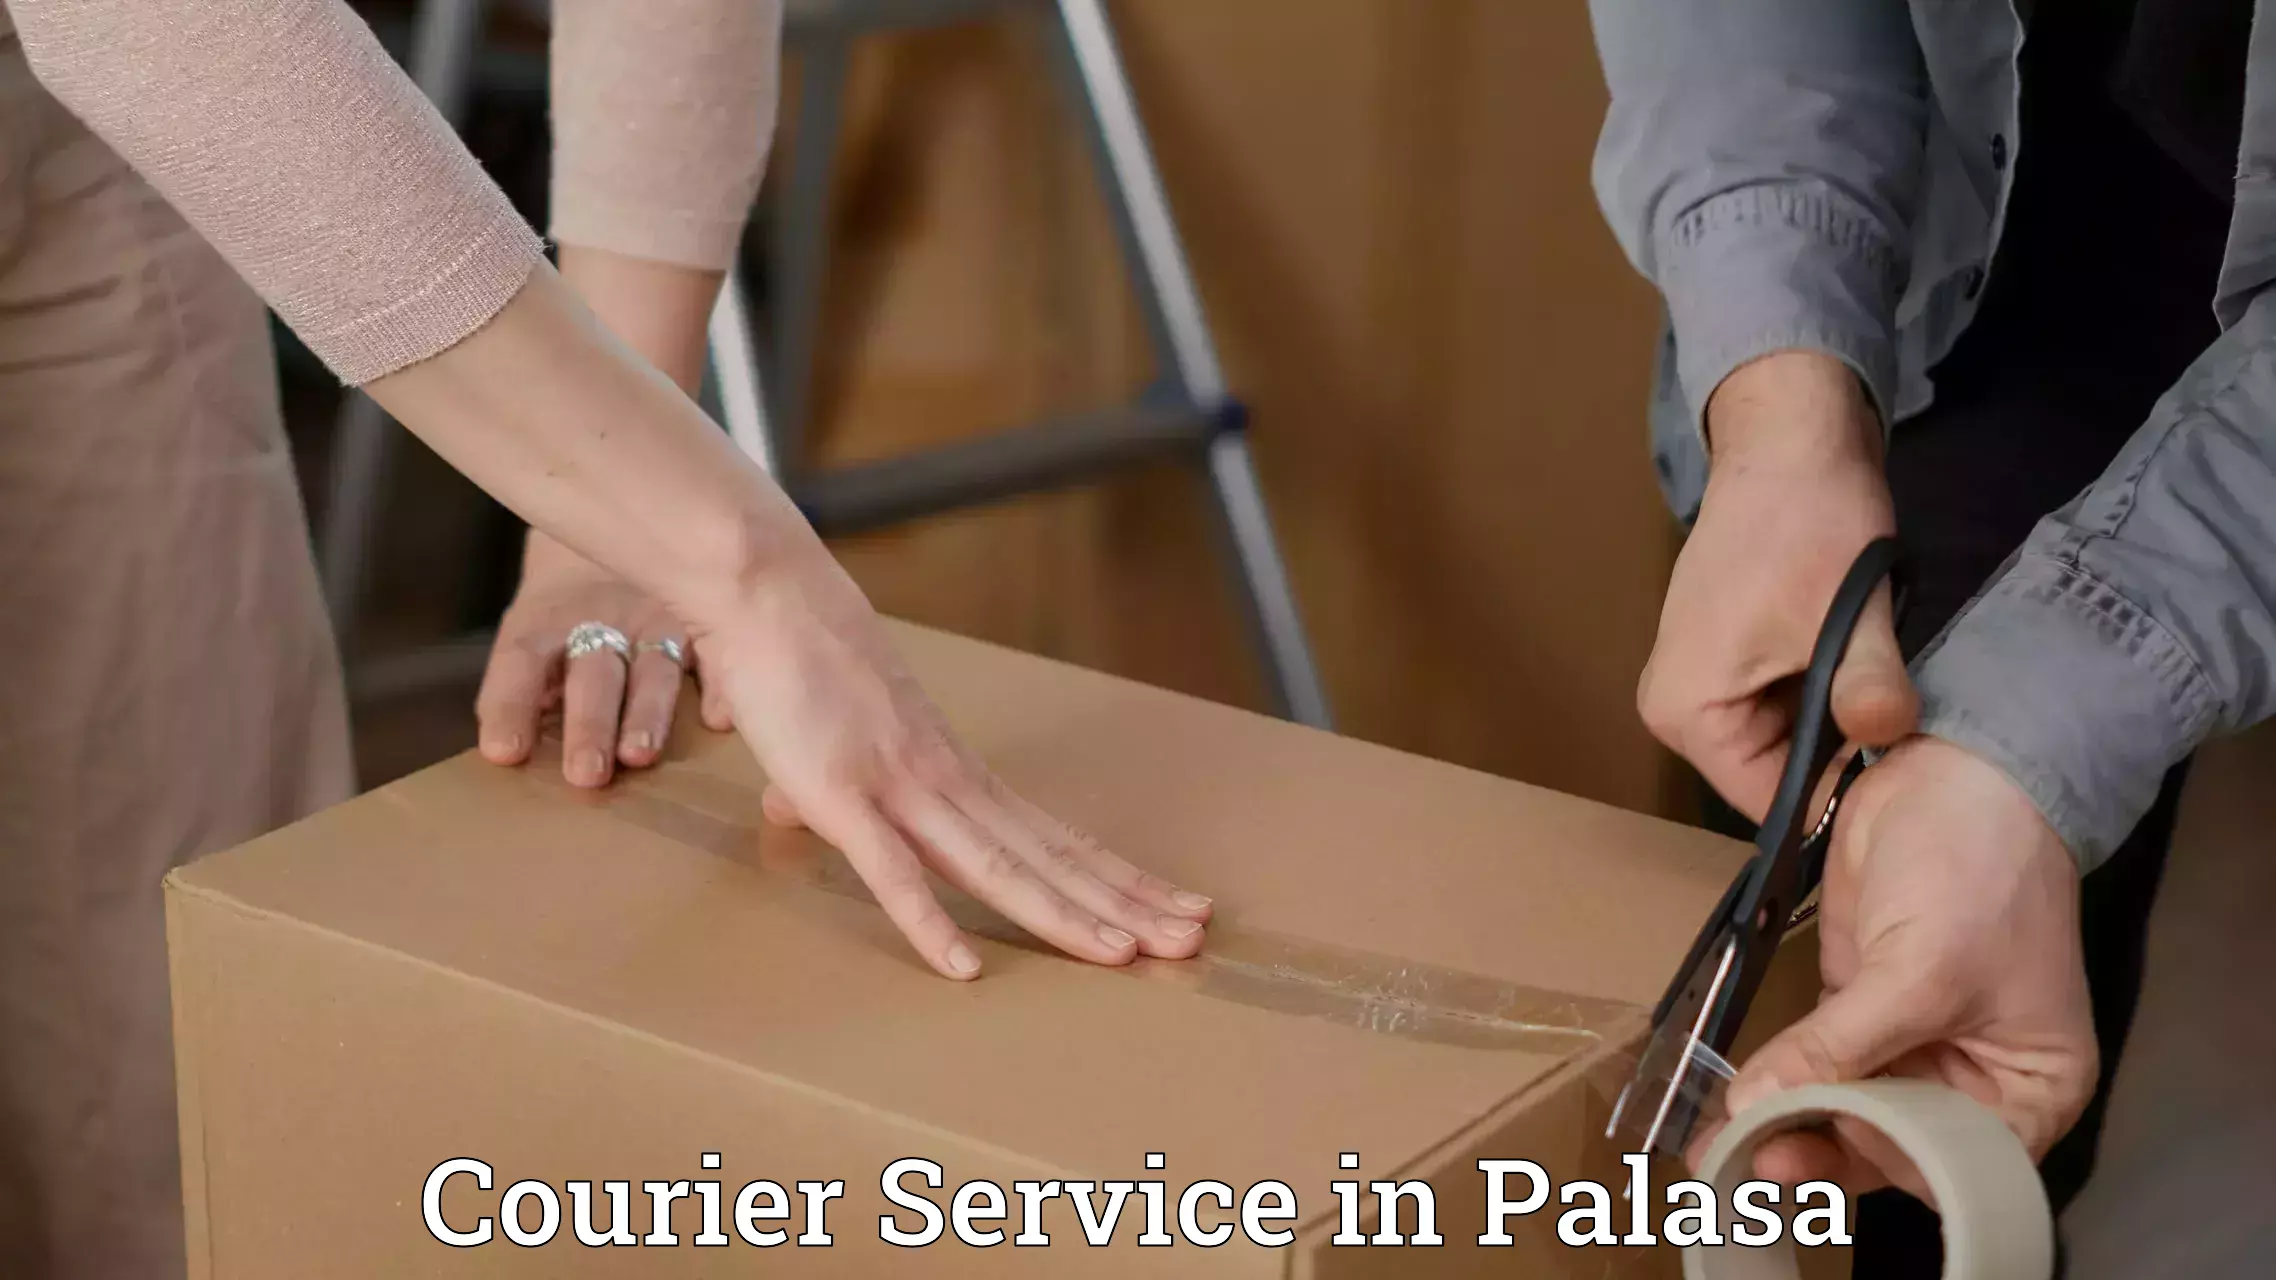 Express logistics service in Palasa